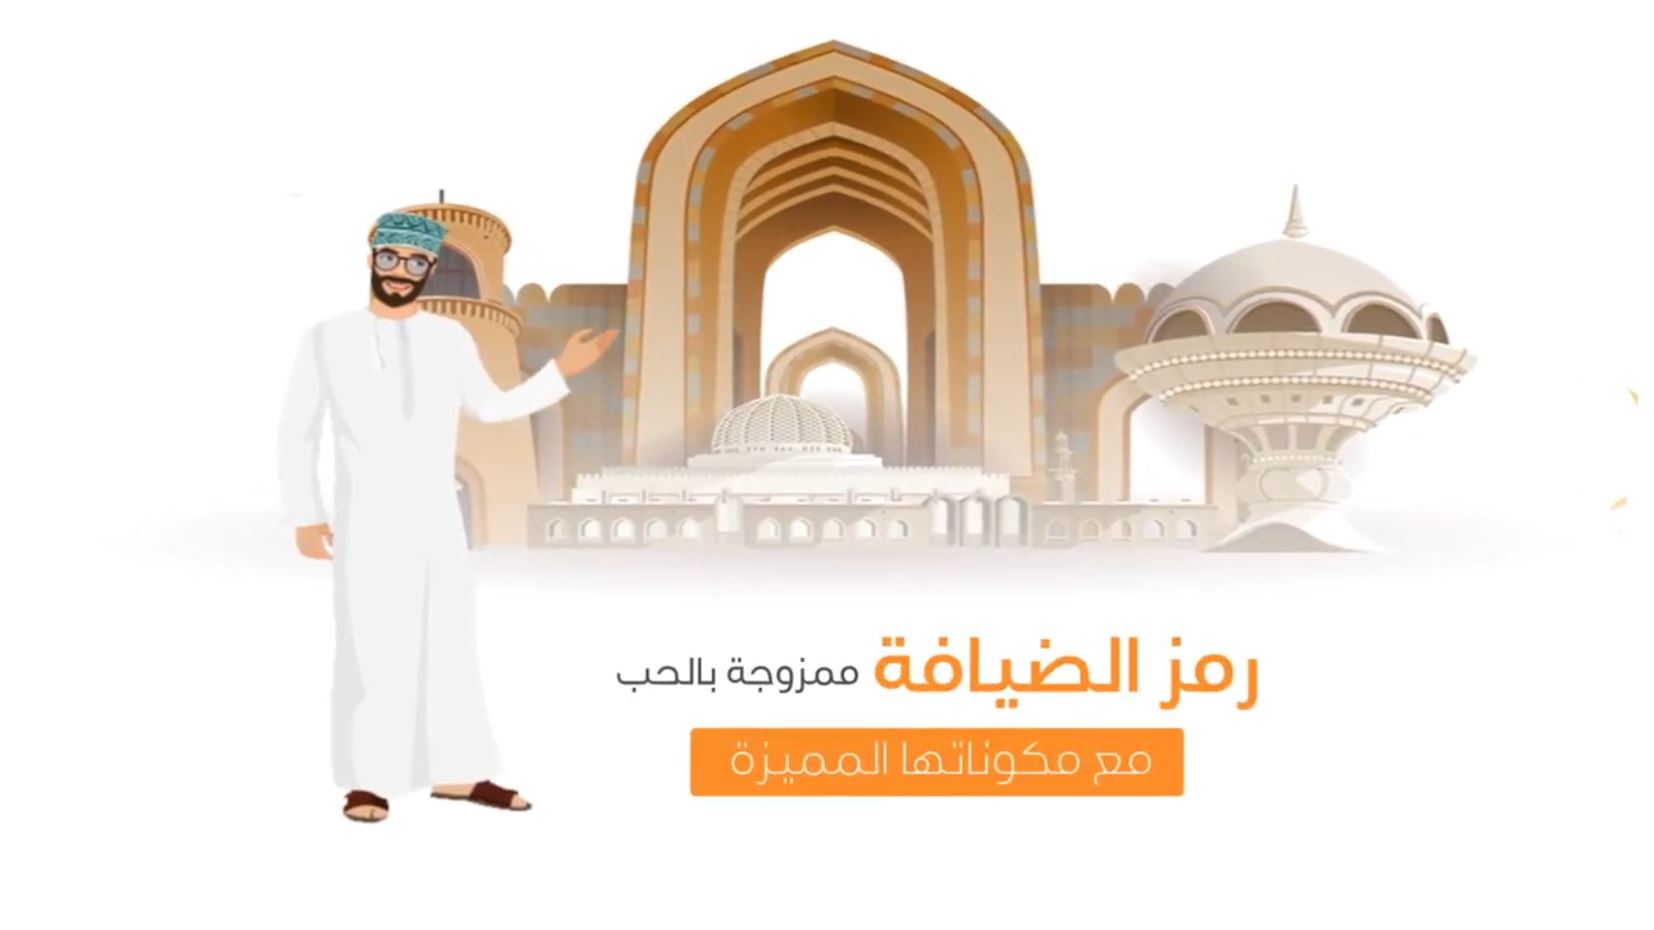 Al-Dana Video Motion Graphic